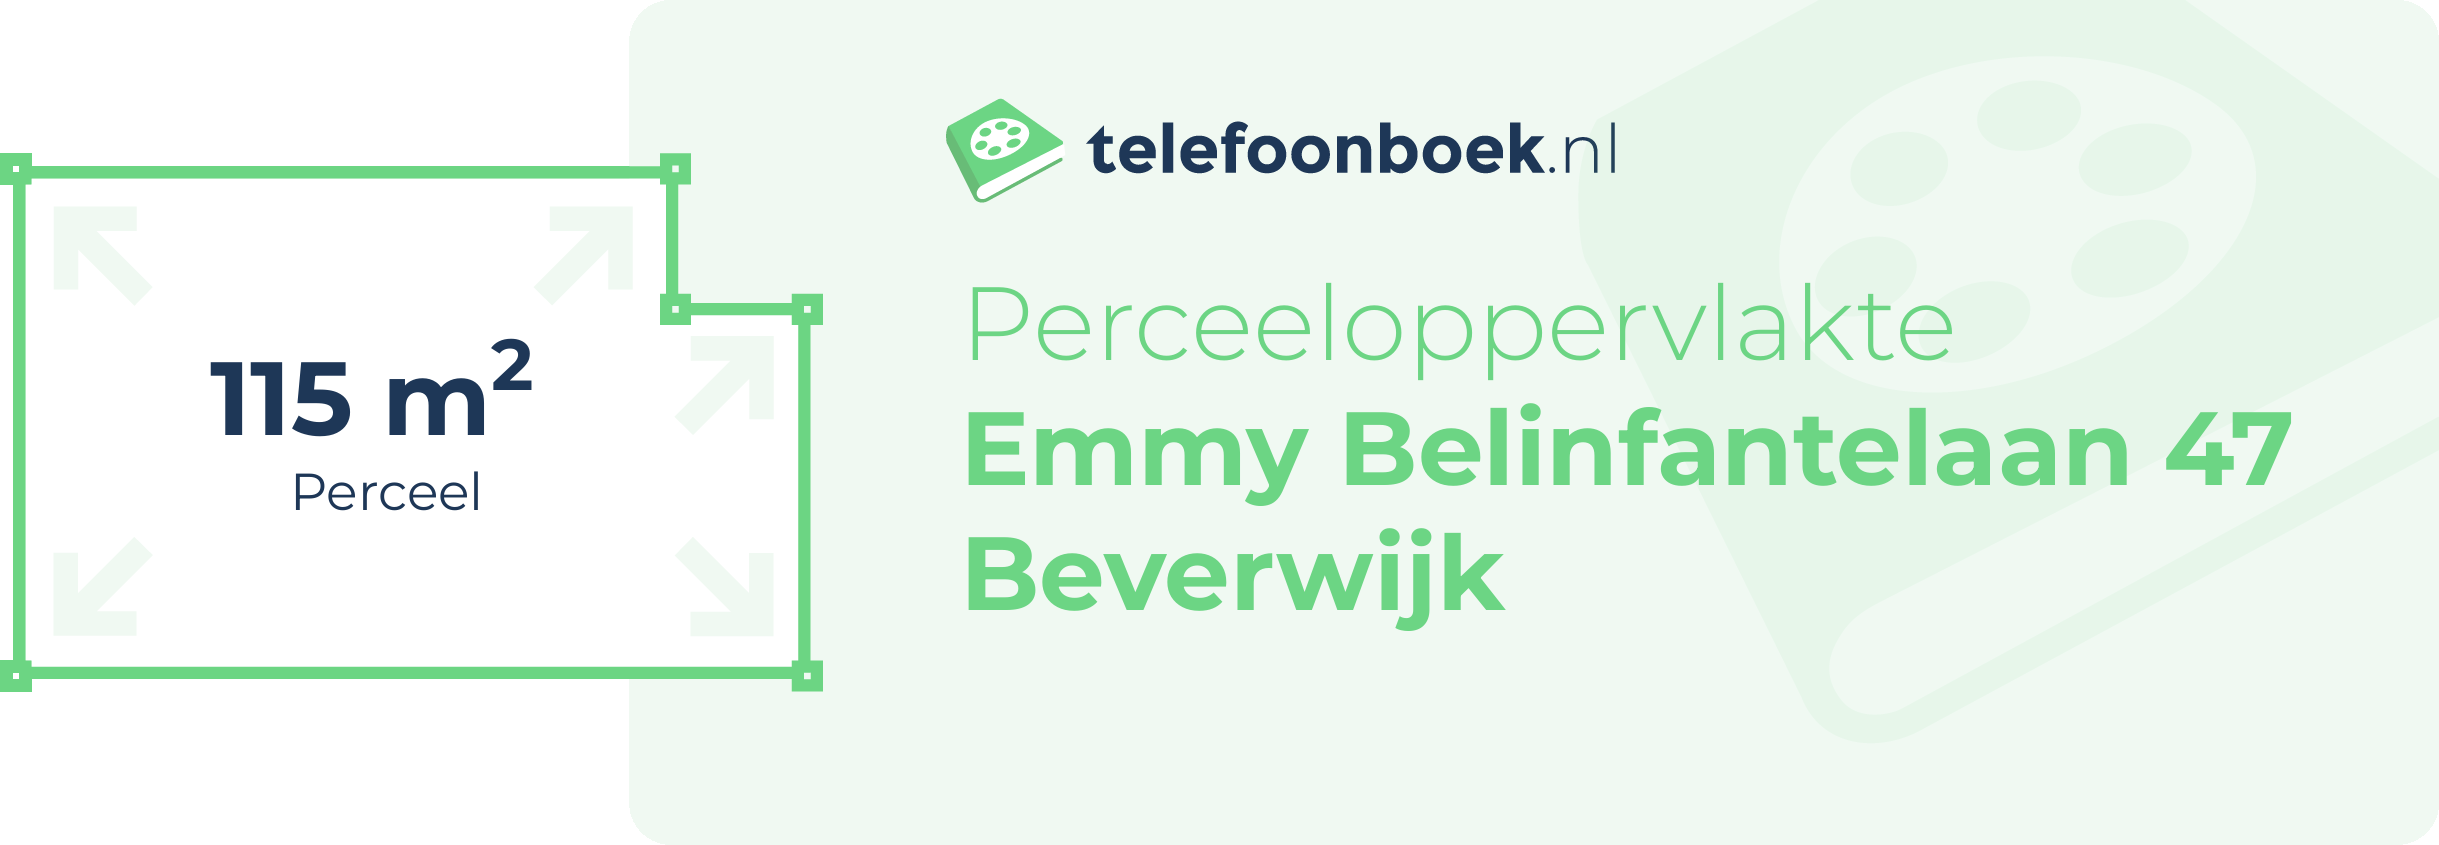 Perceeloppervlakte Emmy Belinfantelaan 47 Beverwijk